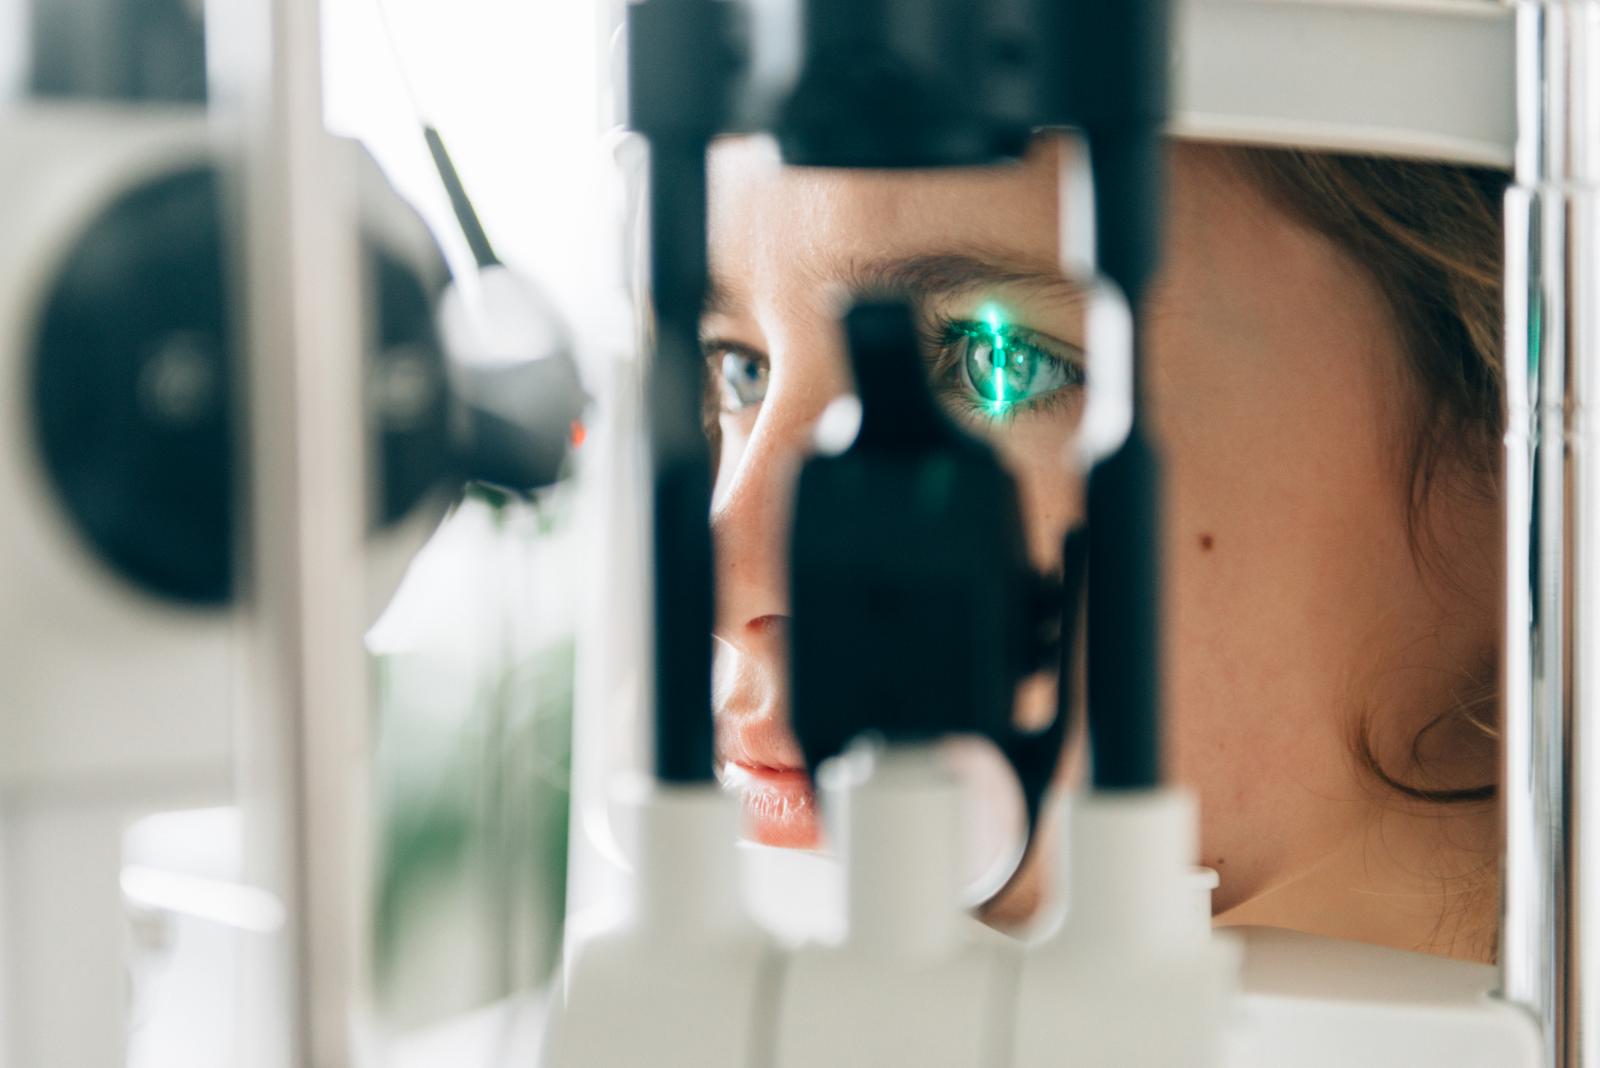 Augenarztbesuch - Laserstrahl fährt über Auge einer Patientin um Sehvermögen zu prüfen